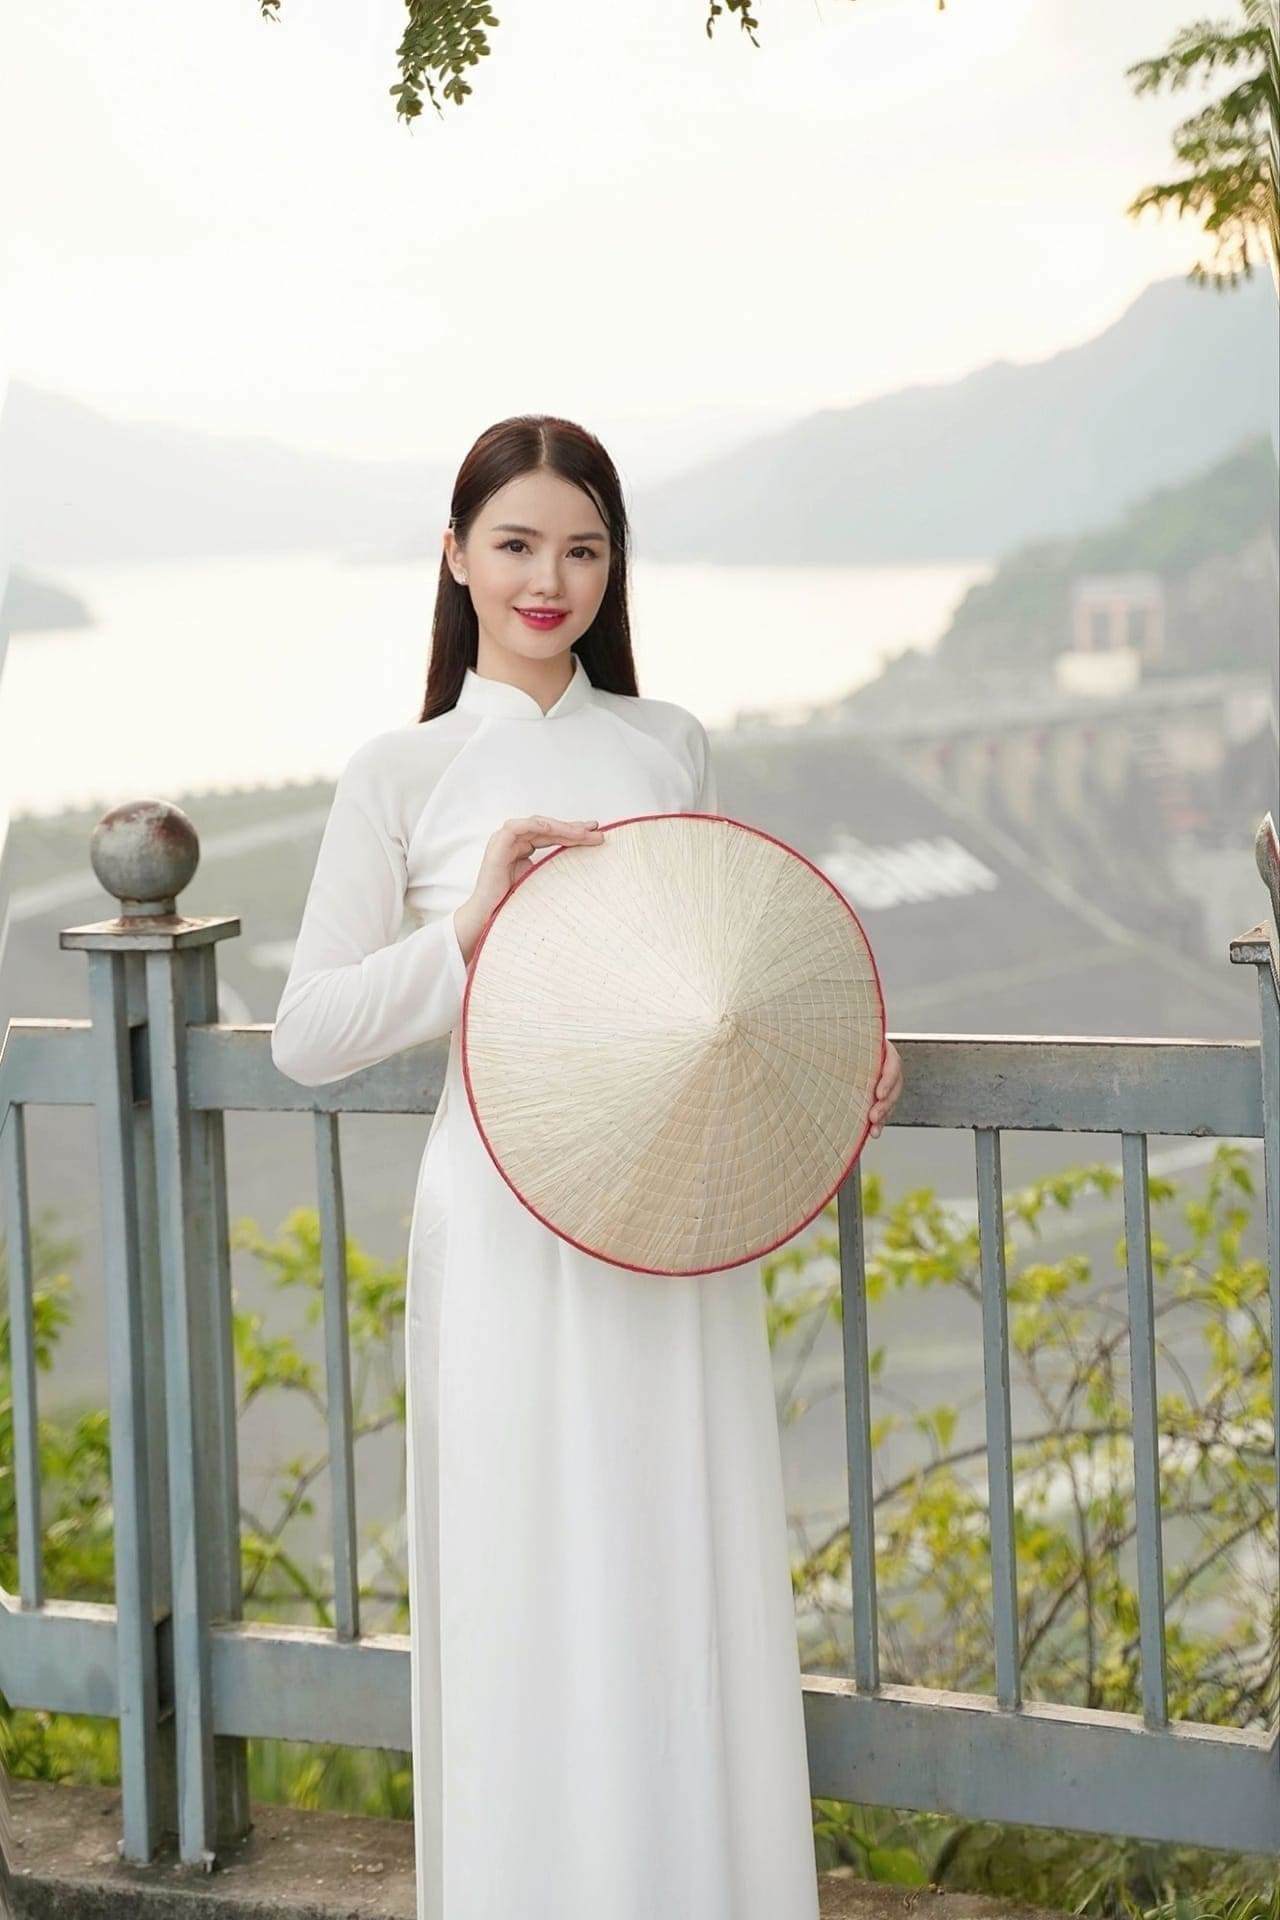 &nbsp;đây, Á hậu 1 Mrs Grand Vietnam 2023 – Bùi Thị Sao Mai đã thực hiện bộ ảnh áo dài trắng tại quê nhà Hoà Bình của cô.&nbsp;&nbsp;